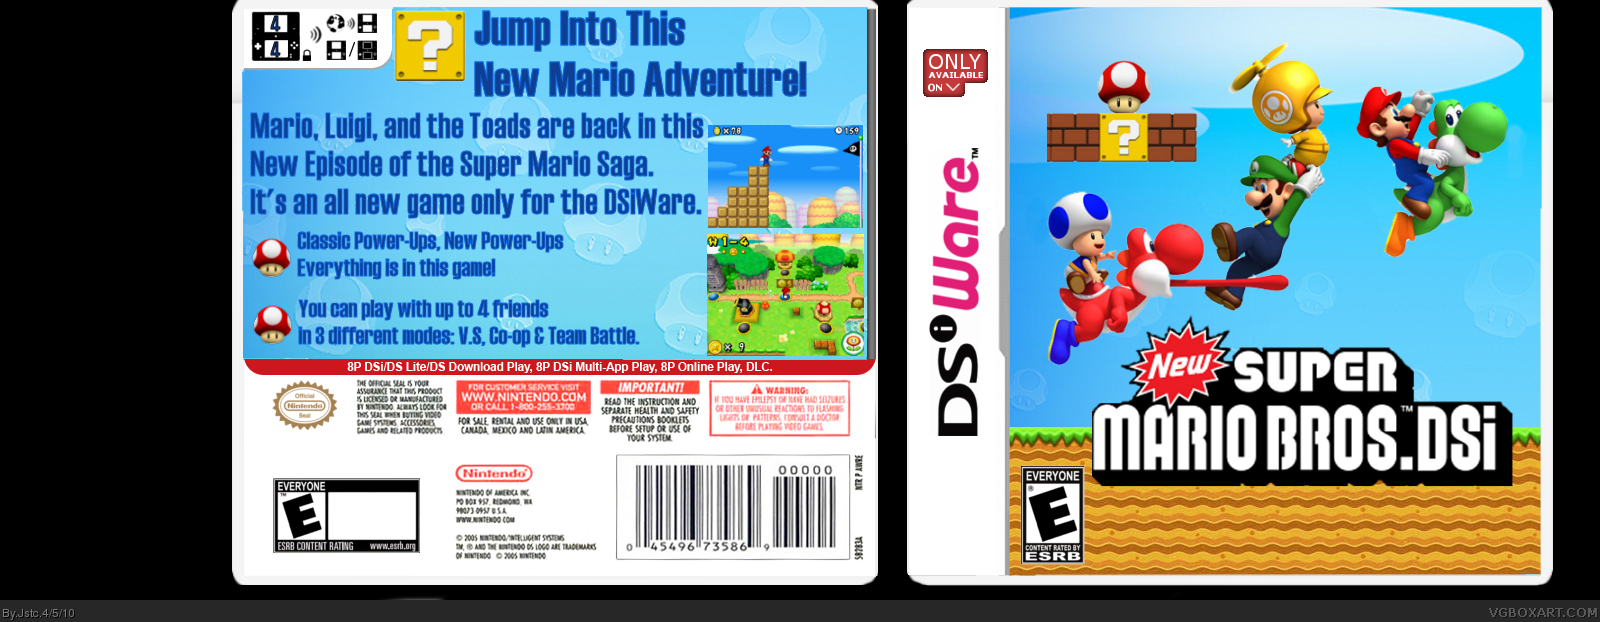 New Super Mario Bros. DSi box cover